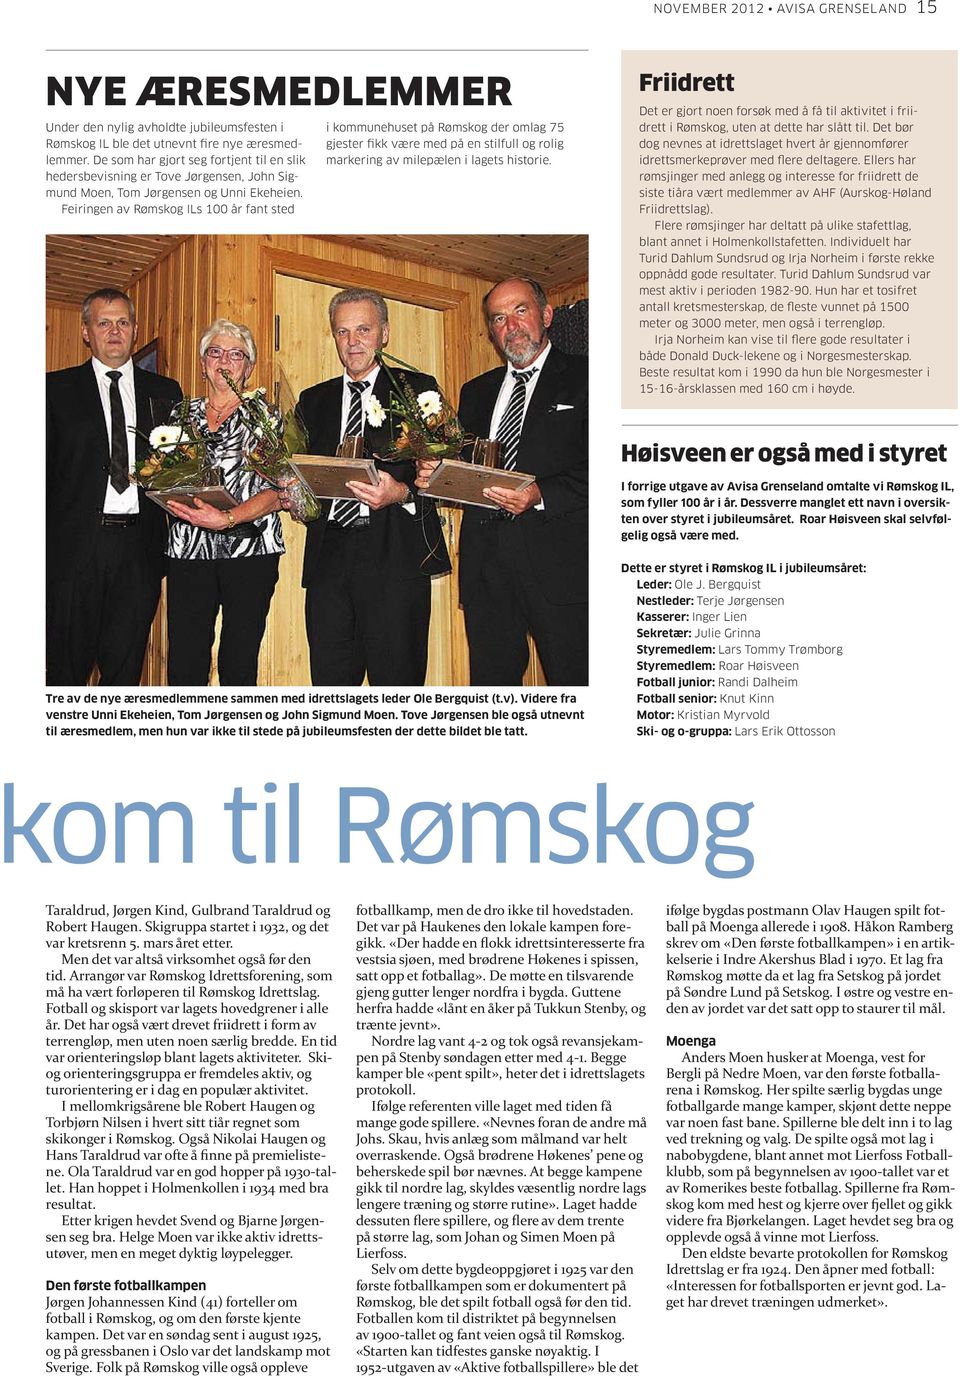 Feiringen av Rømskog ILs 100 år fant sted i kommunehuset på Rømskog der omlag 75 gjester fikk være med på en stilfull og rolig markering av milepælen i lagets historie.